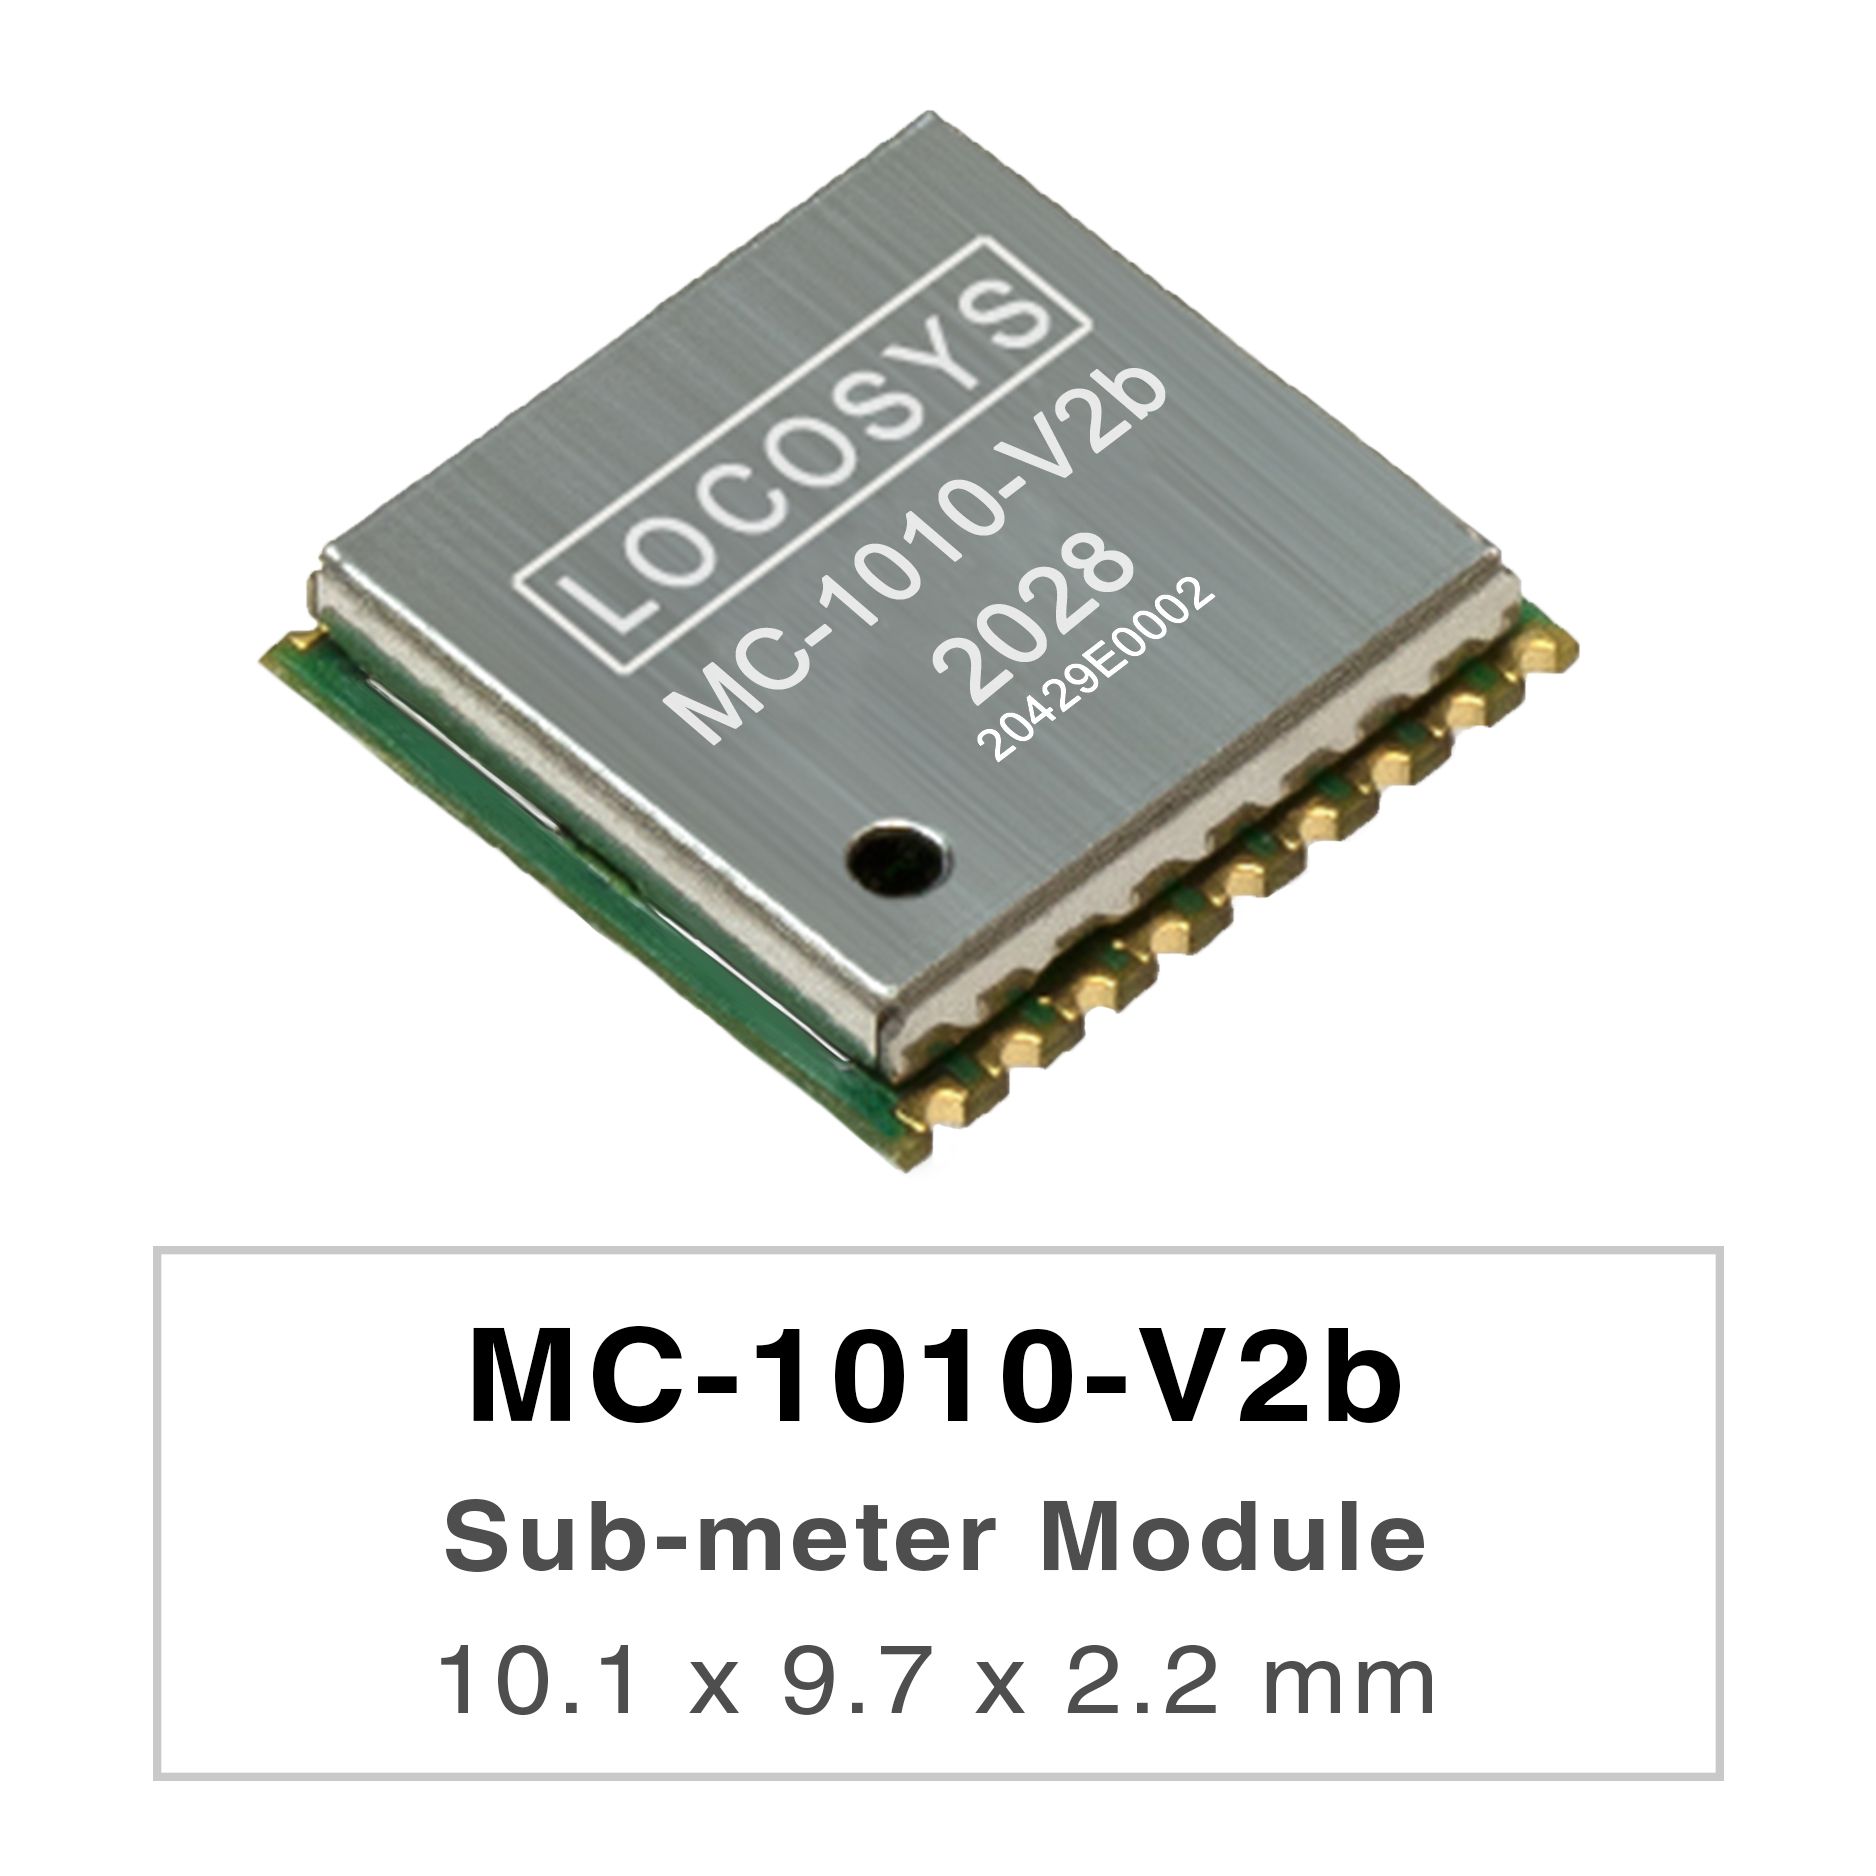 LOCOSYS MC-1010-Vxx серия - это высокопроизводительные двухдиапазонные модули позиционирования GNSS, которые
способны отслеживать все глобальные гражданские навигационные системы. Они используют процессор 12 нм и интегрируют эффективную
архитектуру управления питанием для обеспечения низкого энергопотребления и высокой чувствительности.